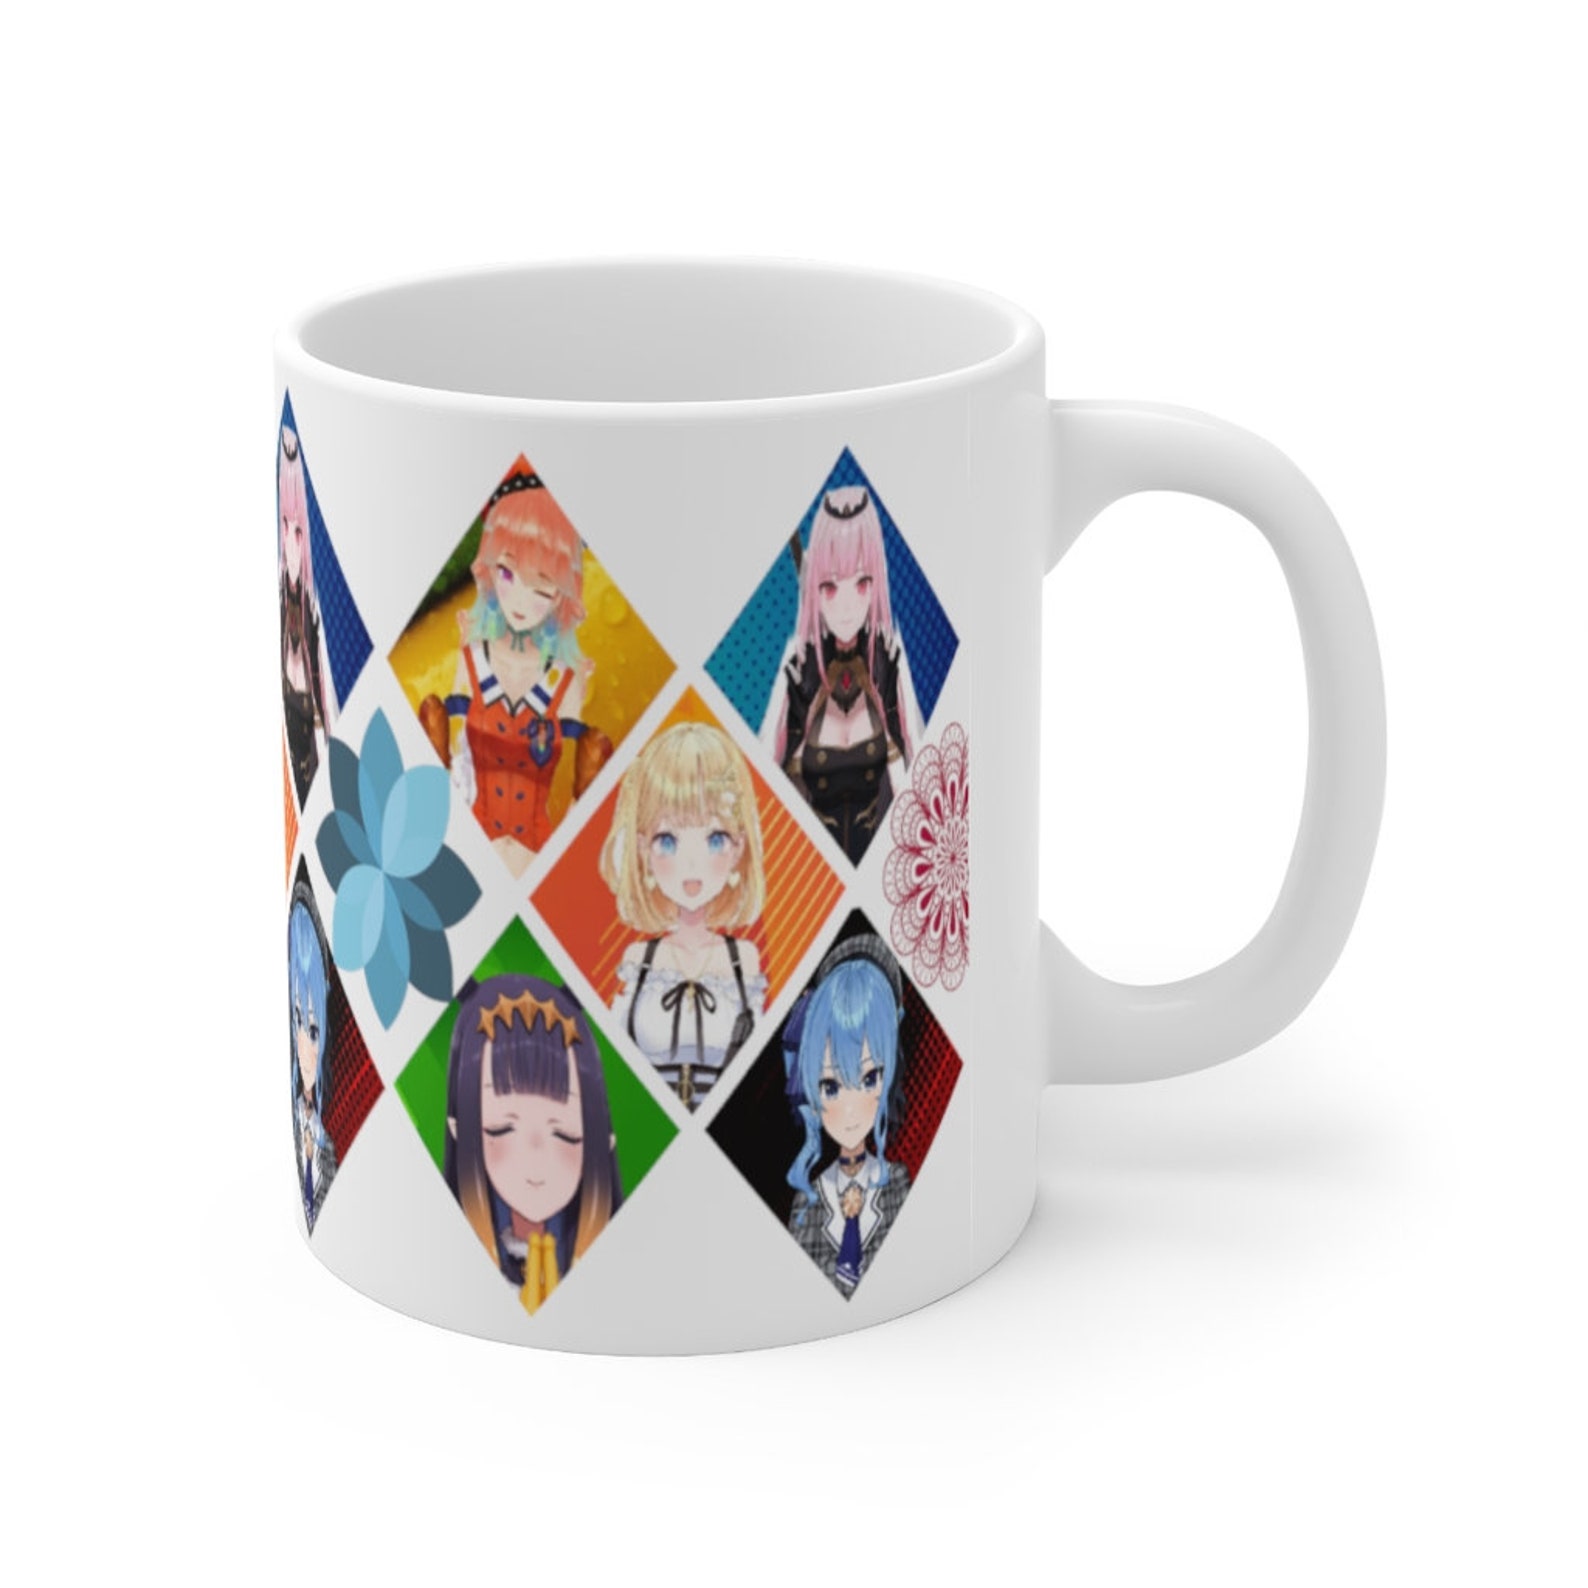 Hololive / Vtuber / Hololive EN / Watson Ceramic Mug 11oz | Etsy